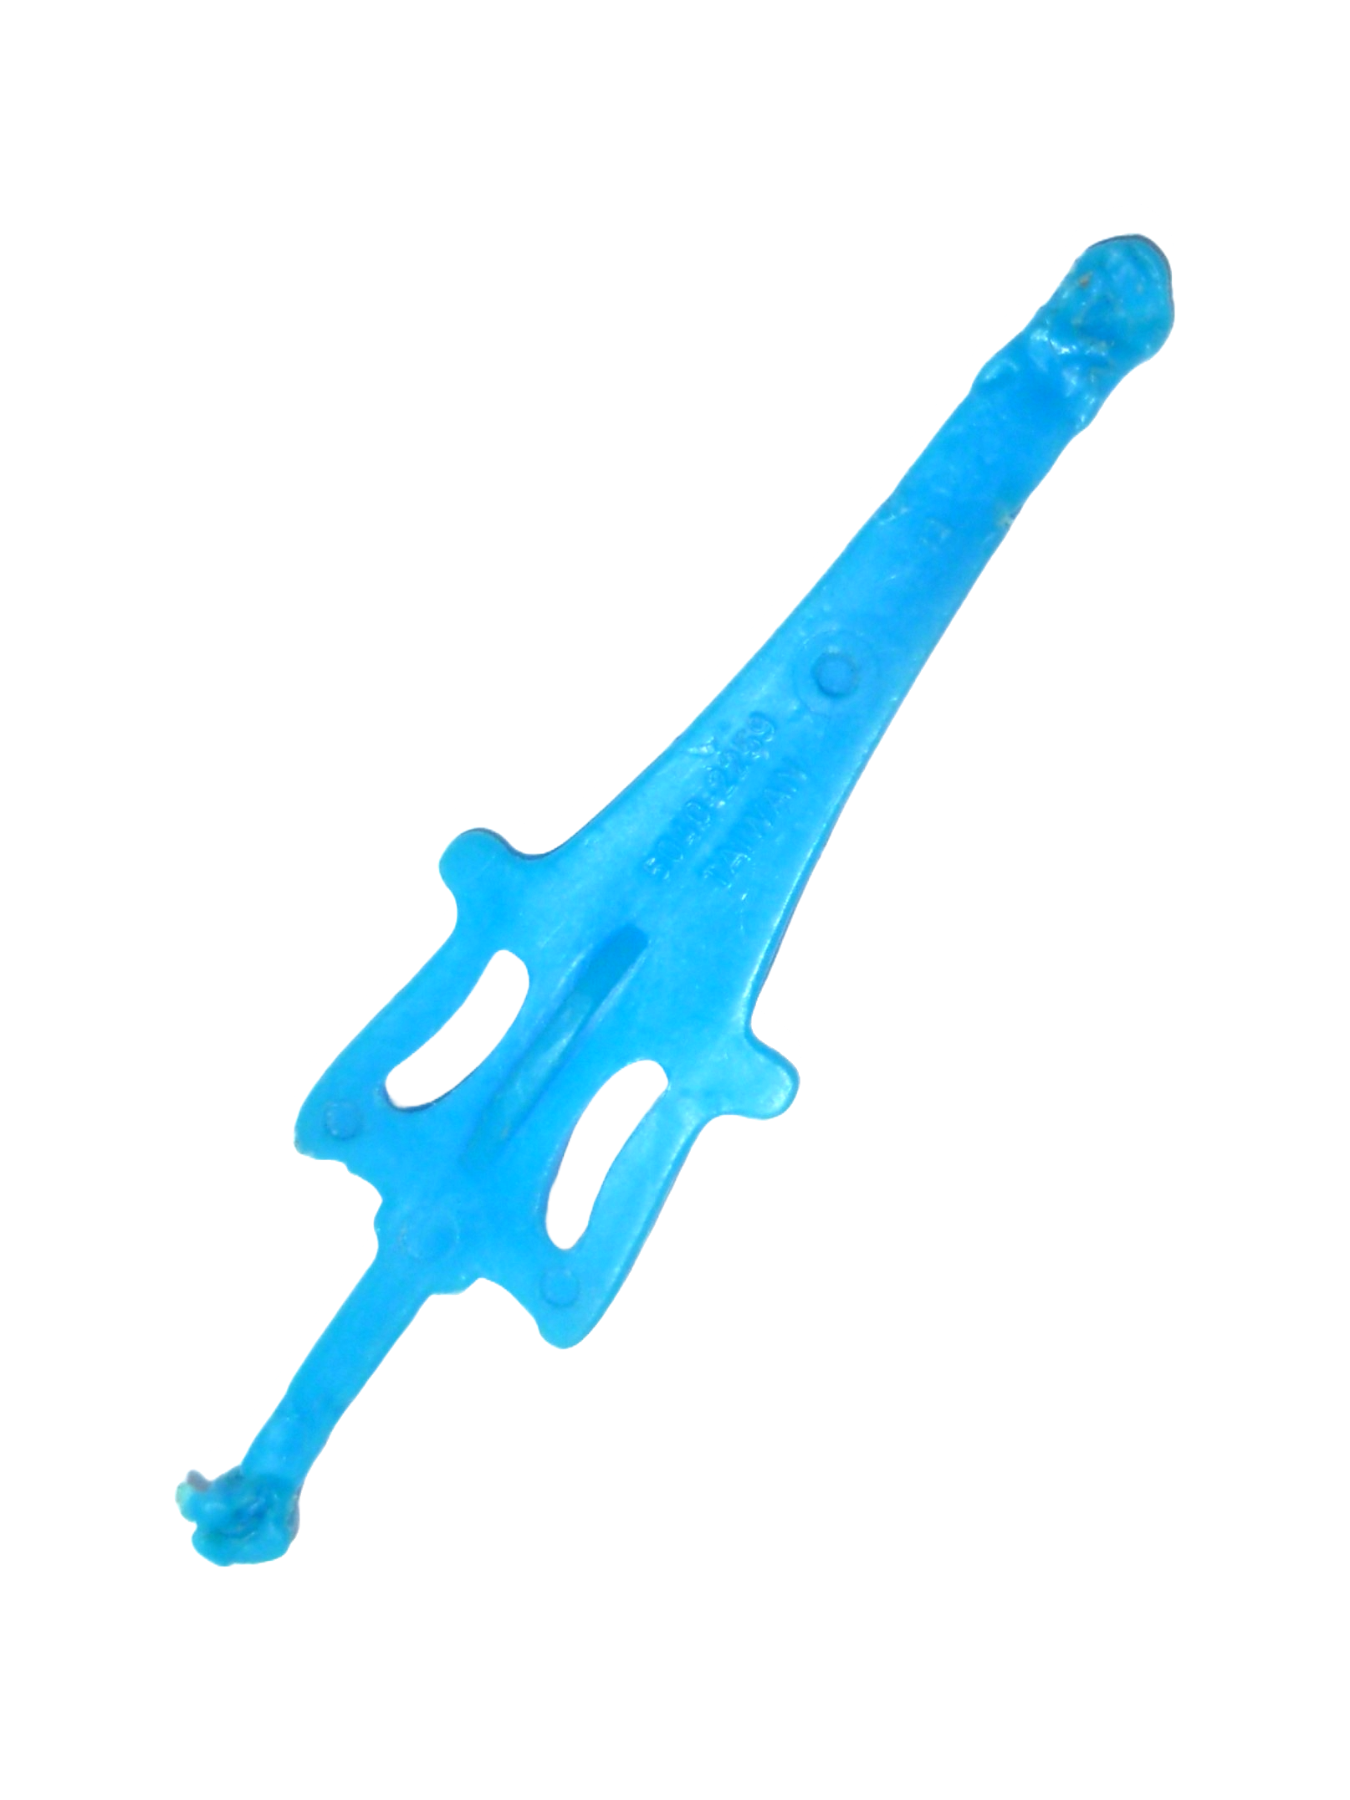 He-Man Schwert blau Taiwan 2